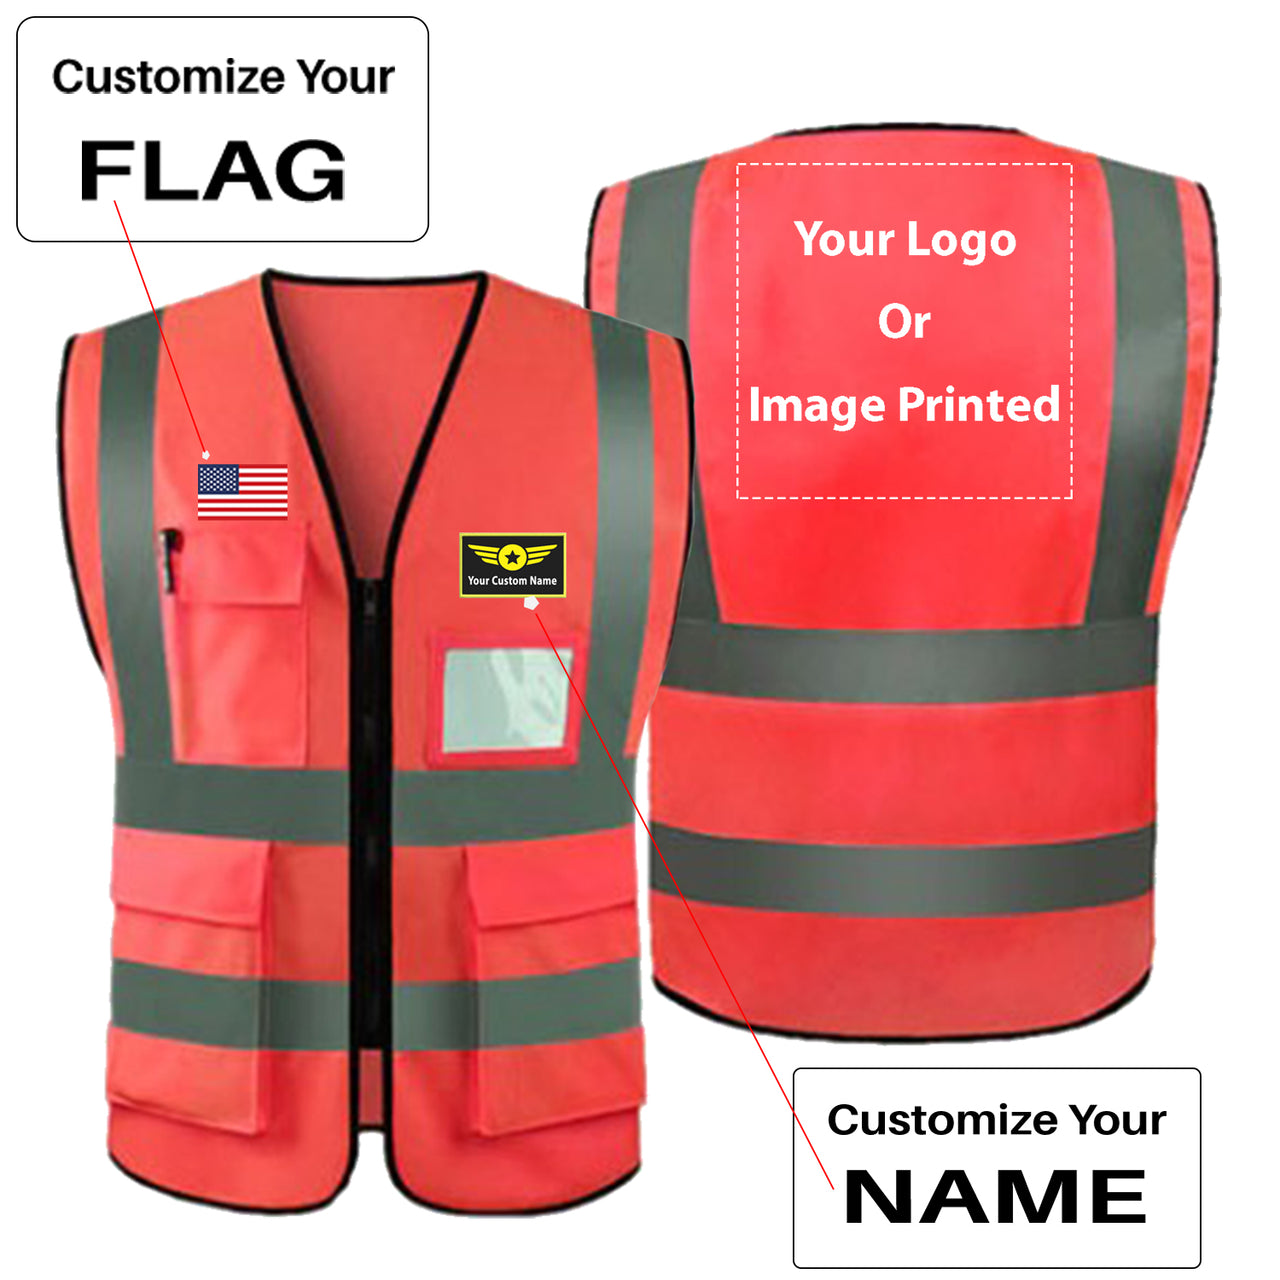 Custom Your Name & Flag & Logo (1) Designed Reflective Vests